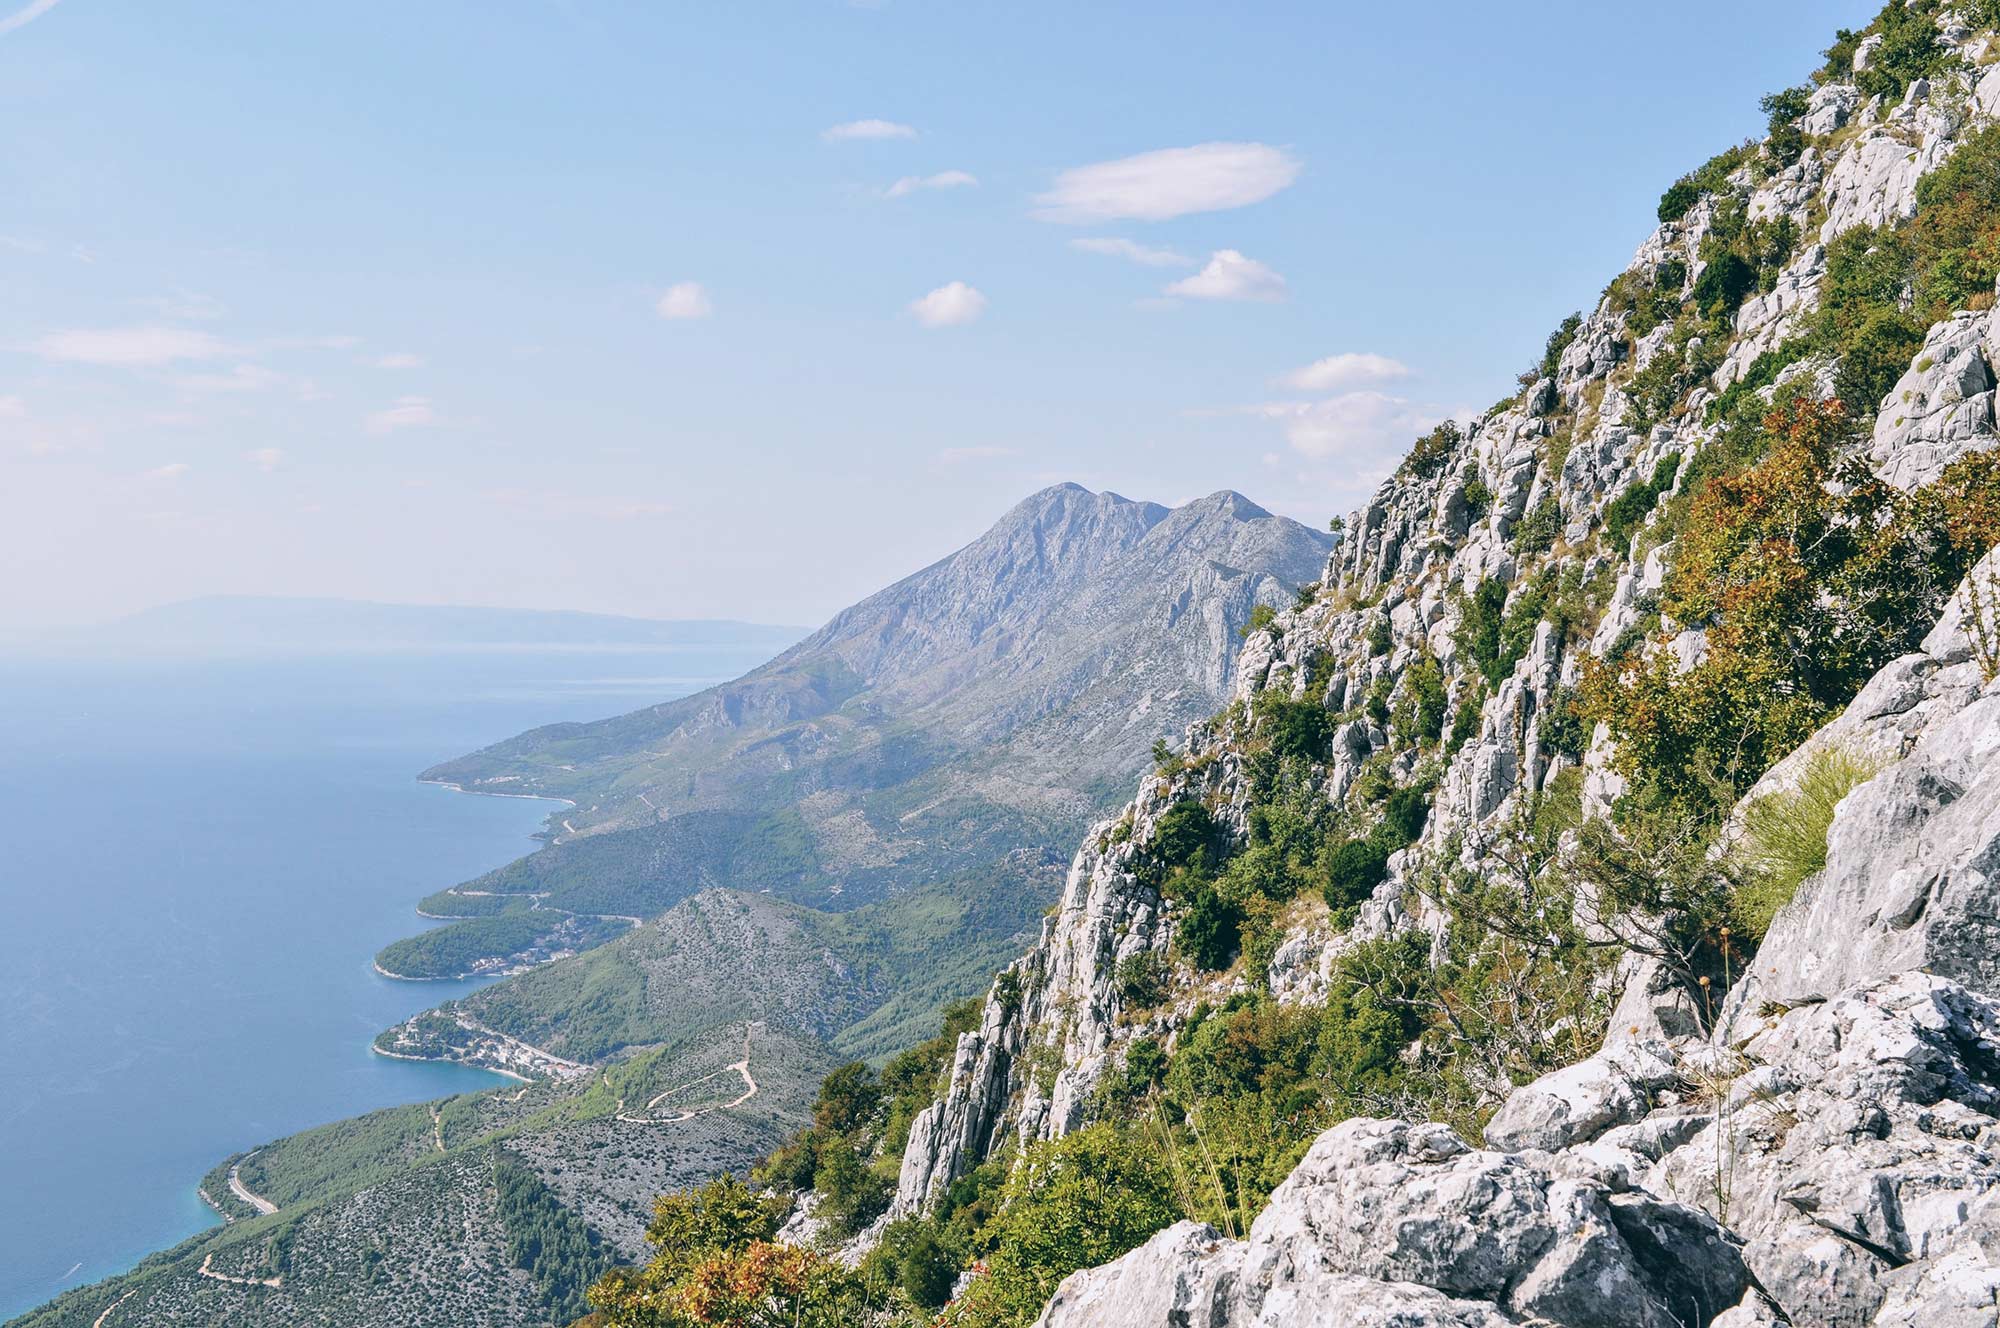 Die Berge um Makarska sind wunderschön, wie hier im Bild zu sehen ist